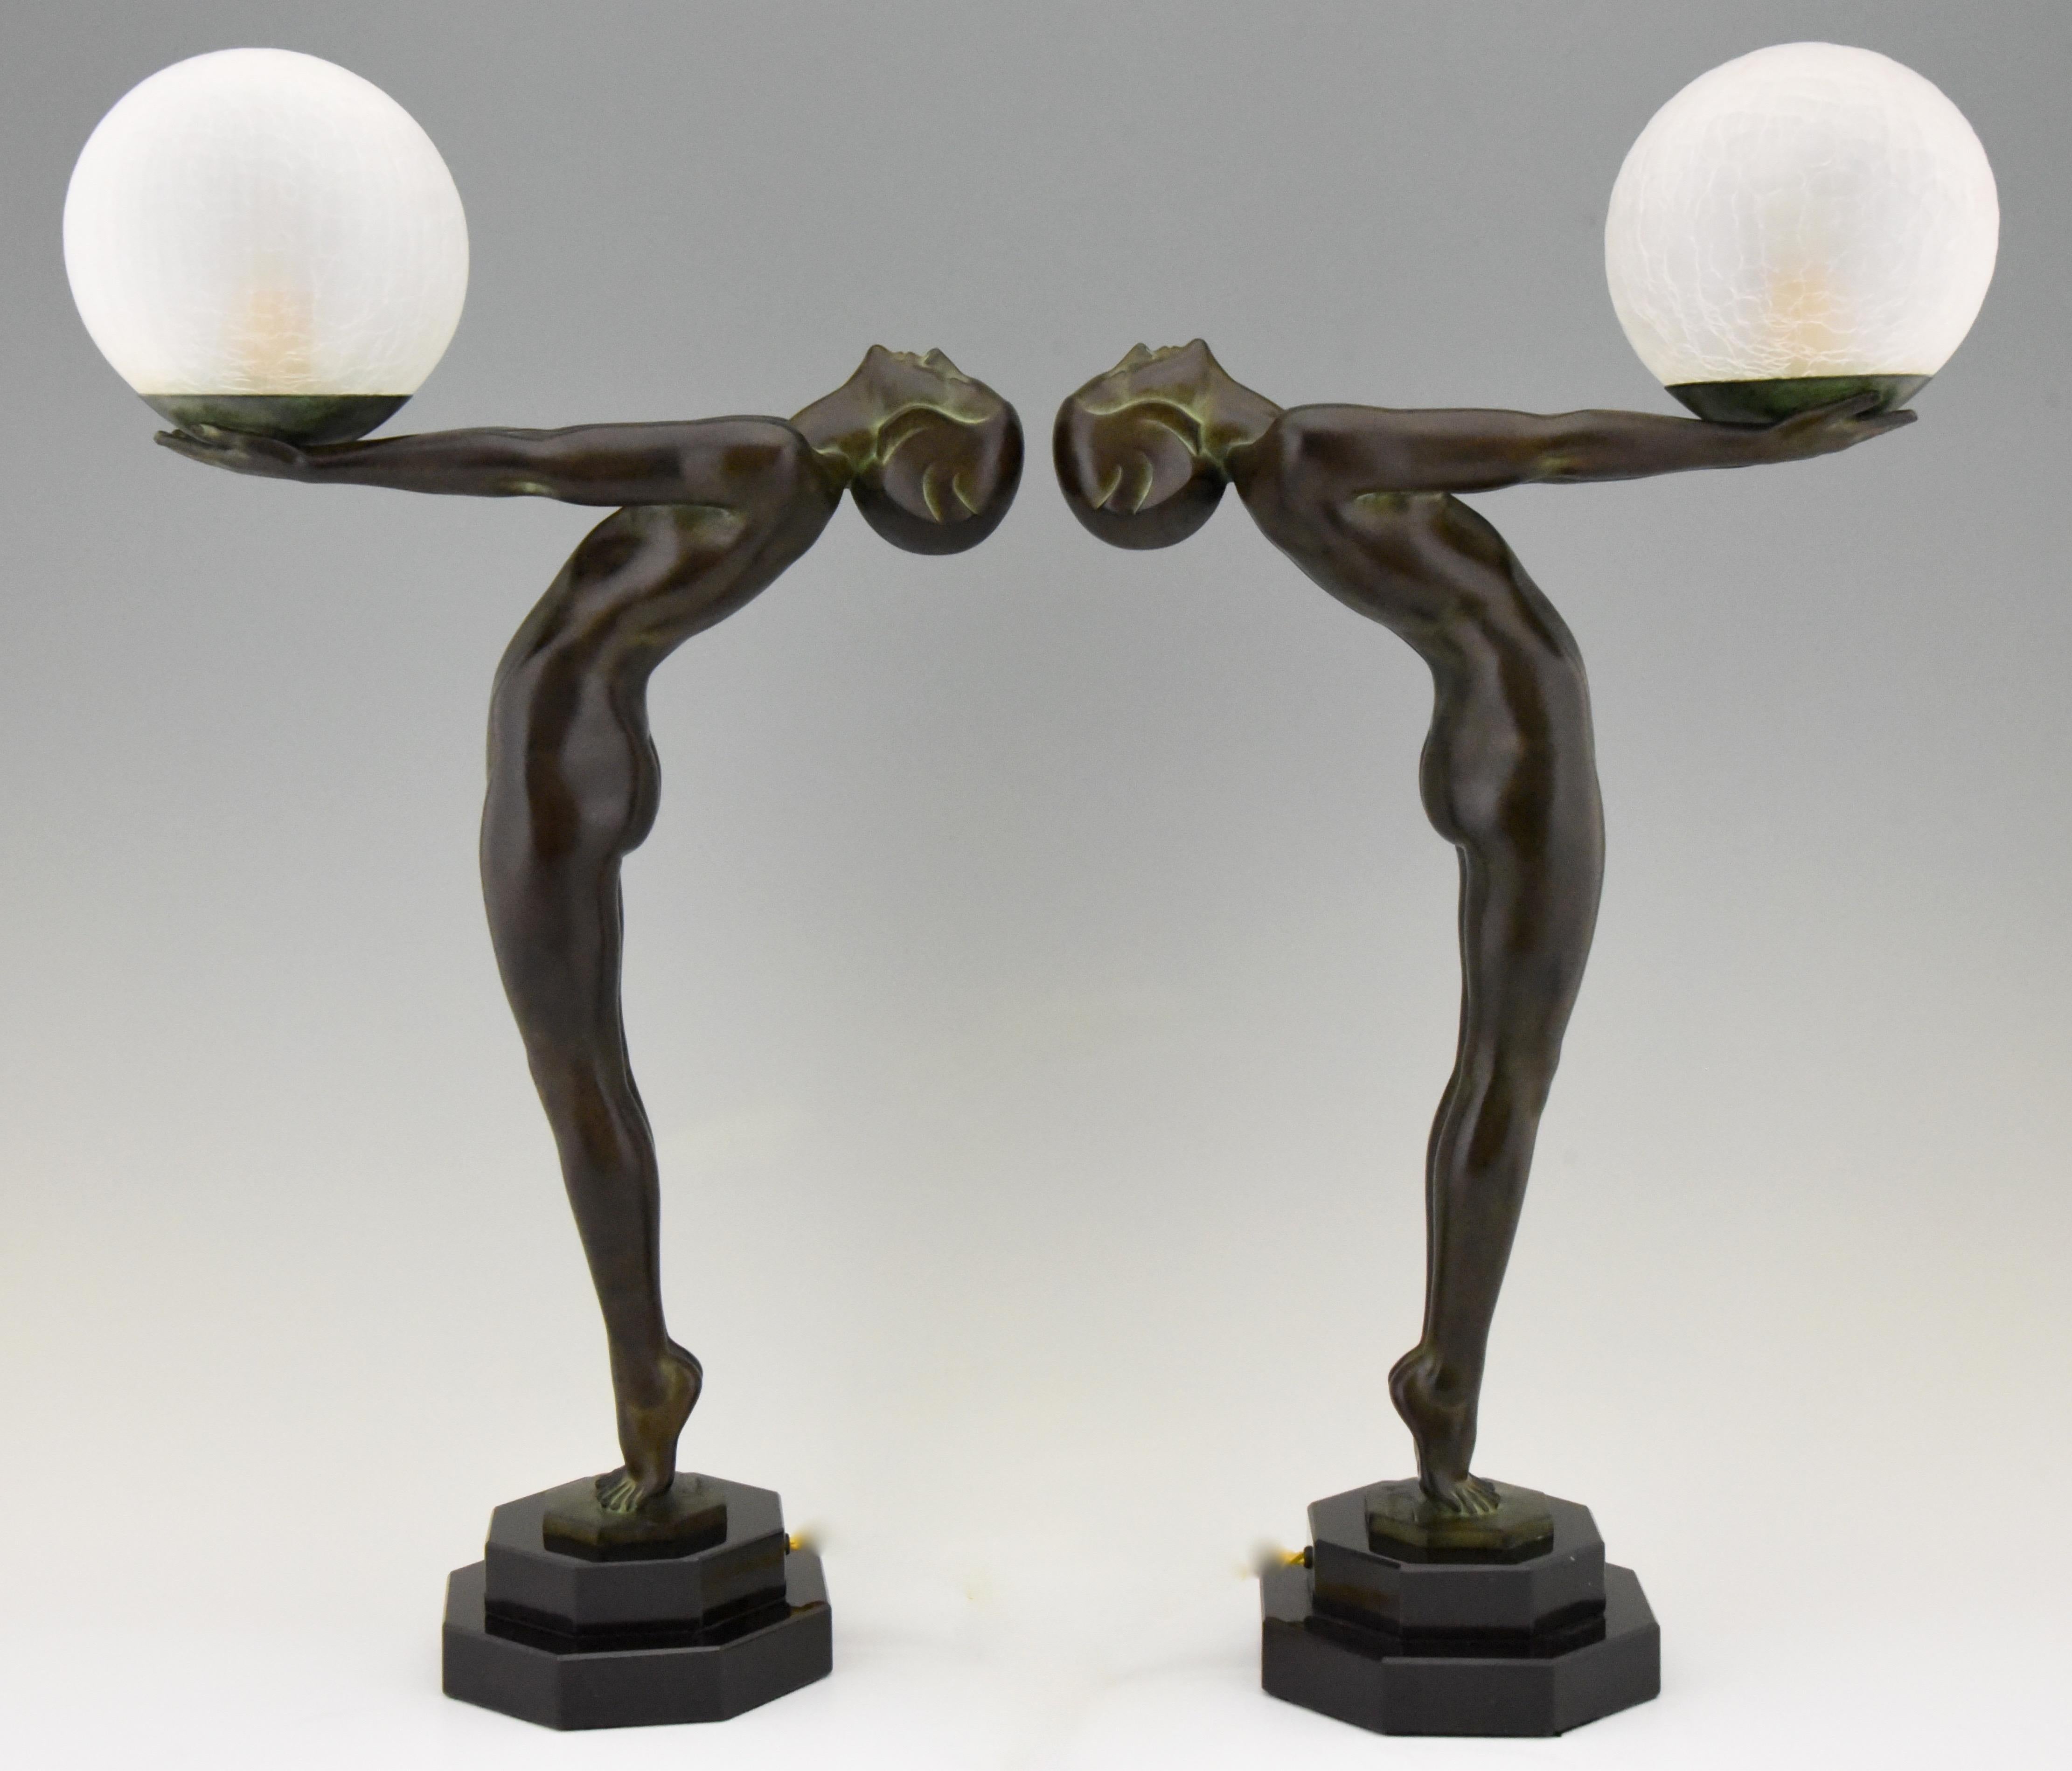 Art Deco Style Lamp Clarté Standing Nude Sculpture Max Le Verrier For Sale 2